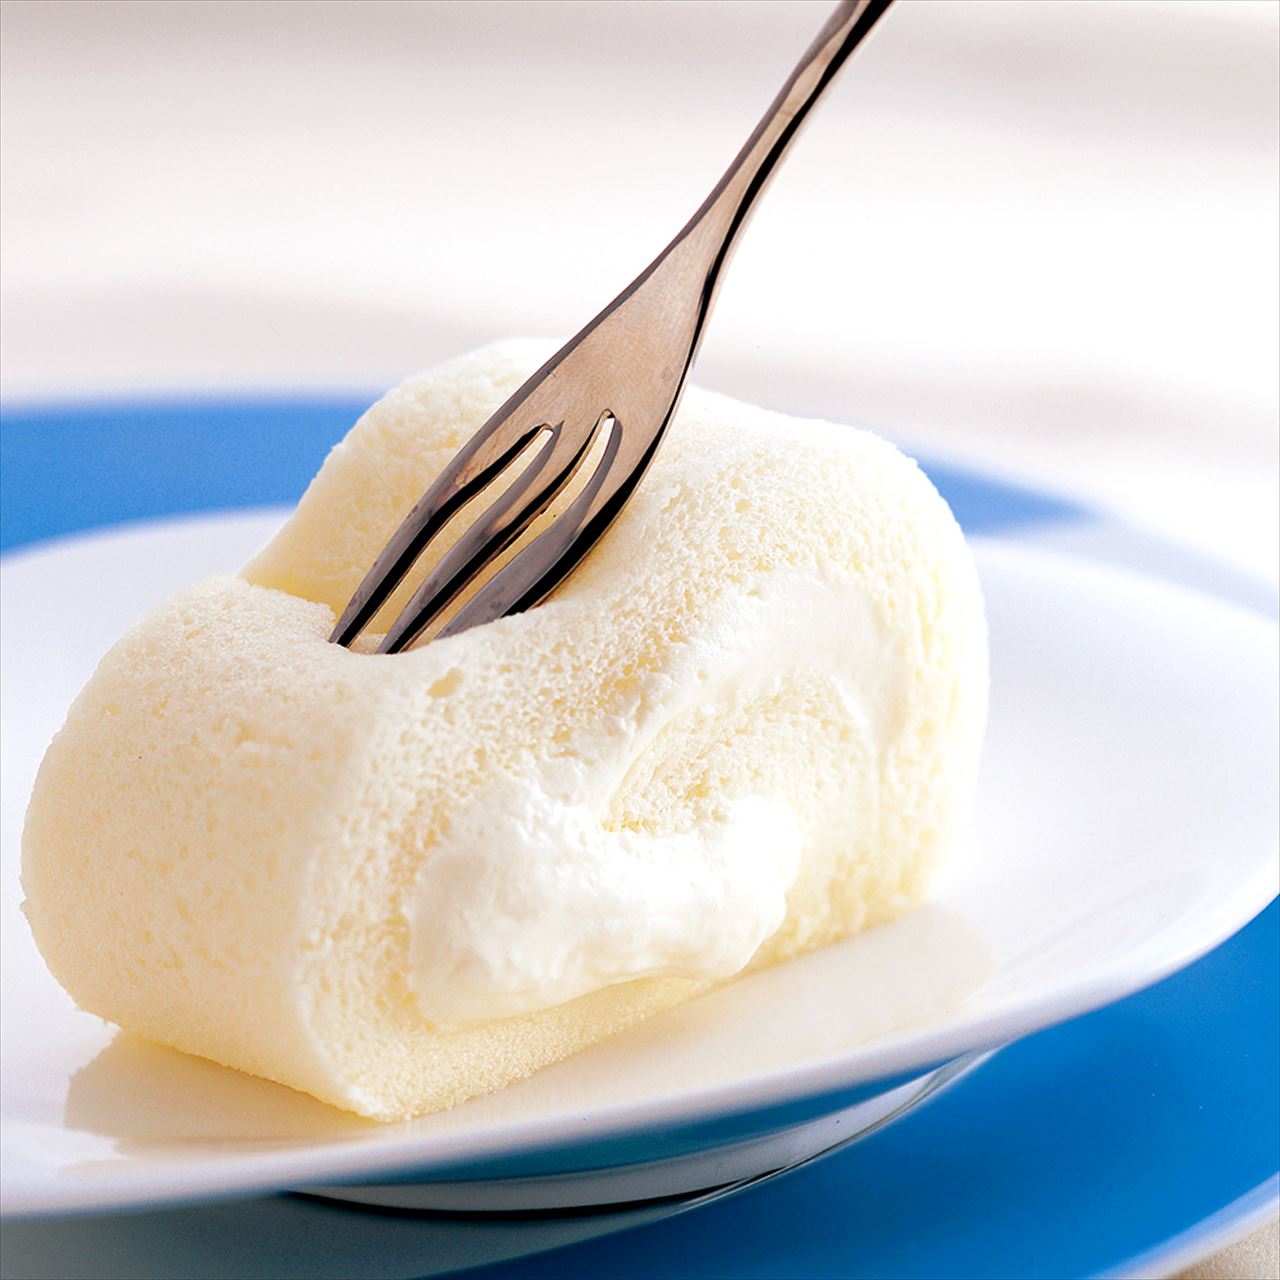 濃厚チーズクリームがたまらない 神戸とろけるチーズカヌレ Tabizine 人生に旅心を